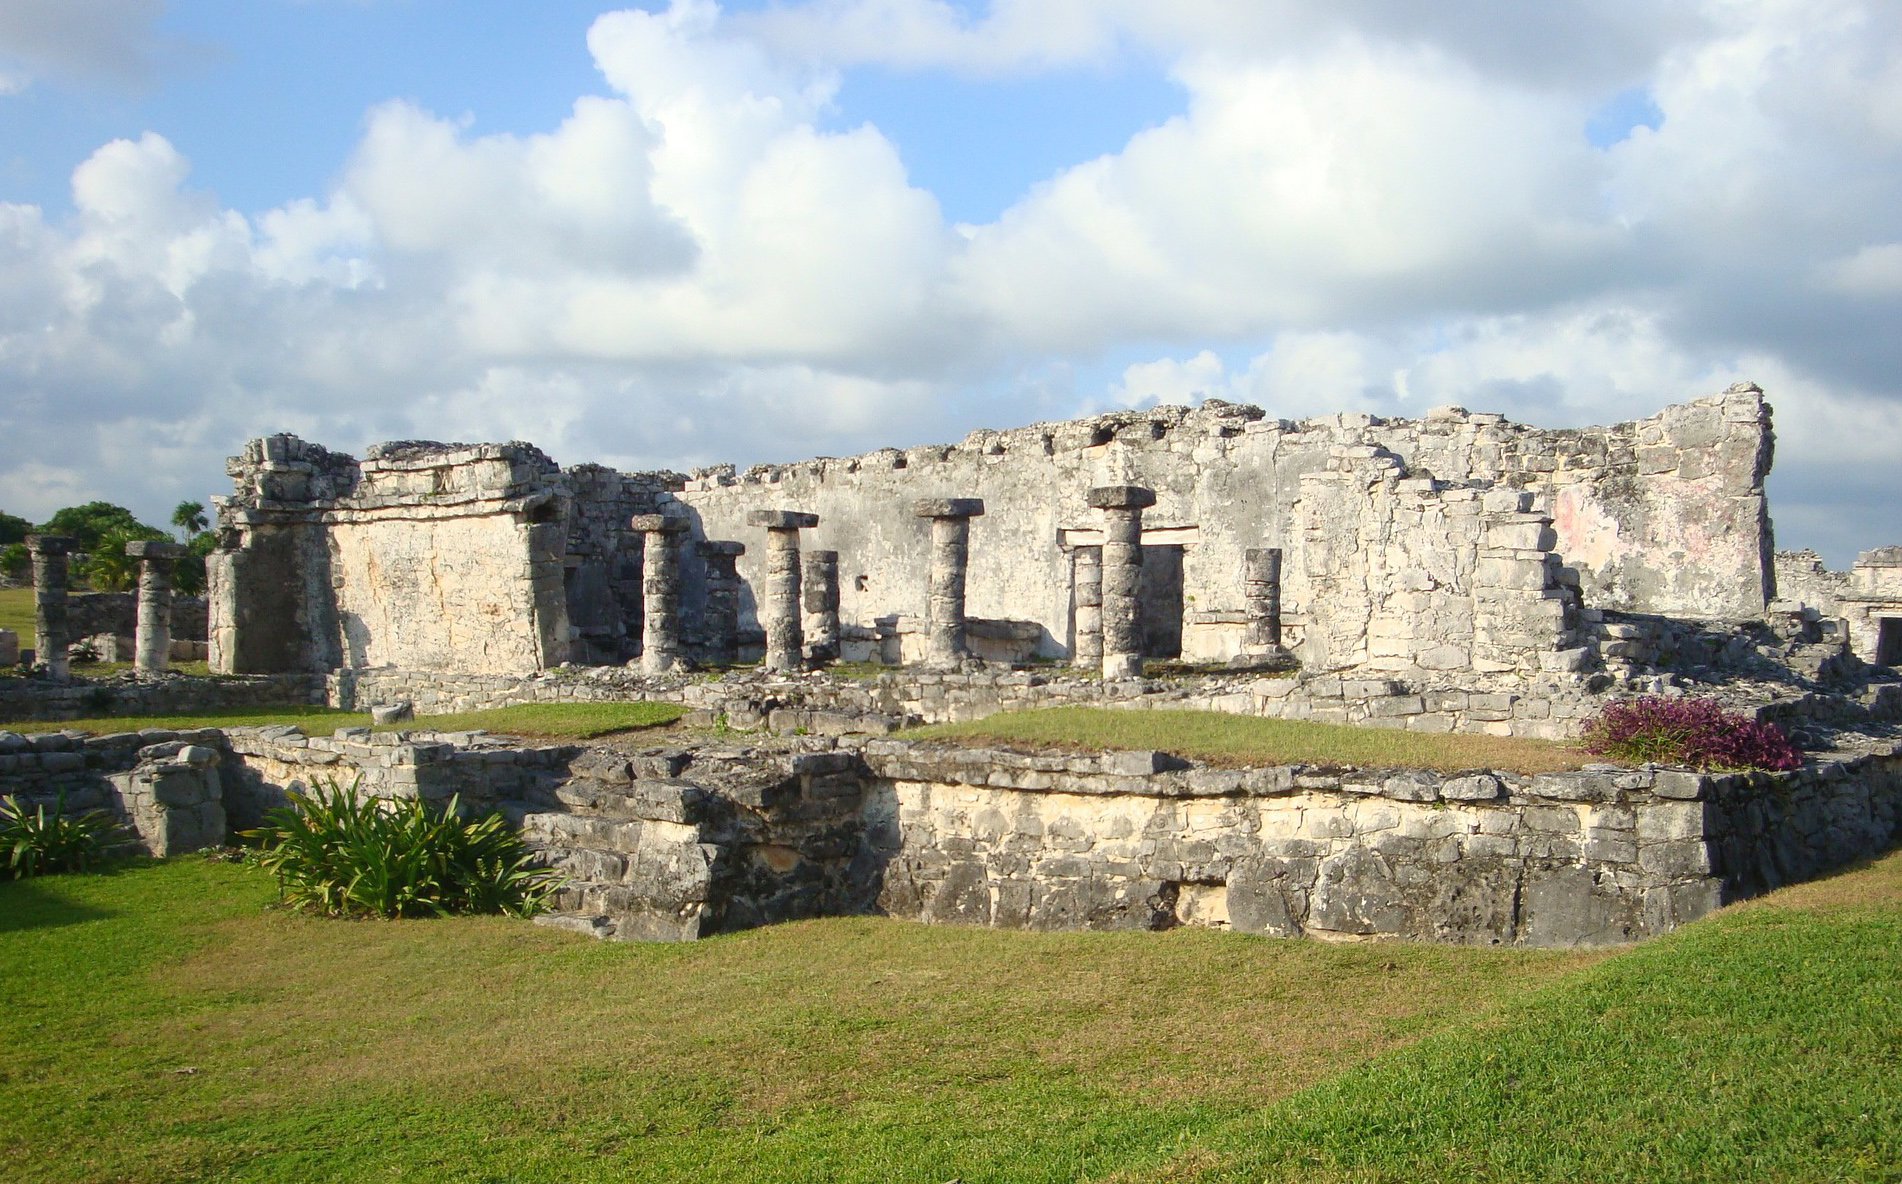 Ruines du site archéologique de Tulum, voyage au Mexique dans la péninsule du Yucatan avec Nirvatravel